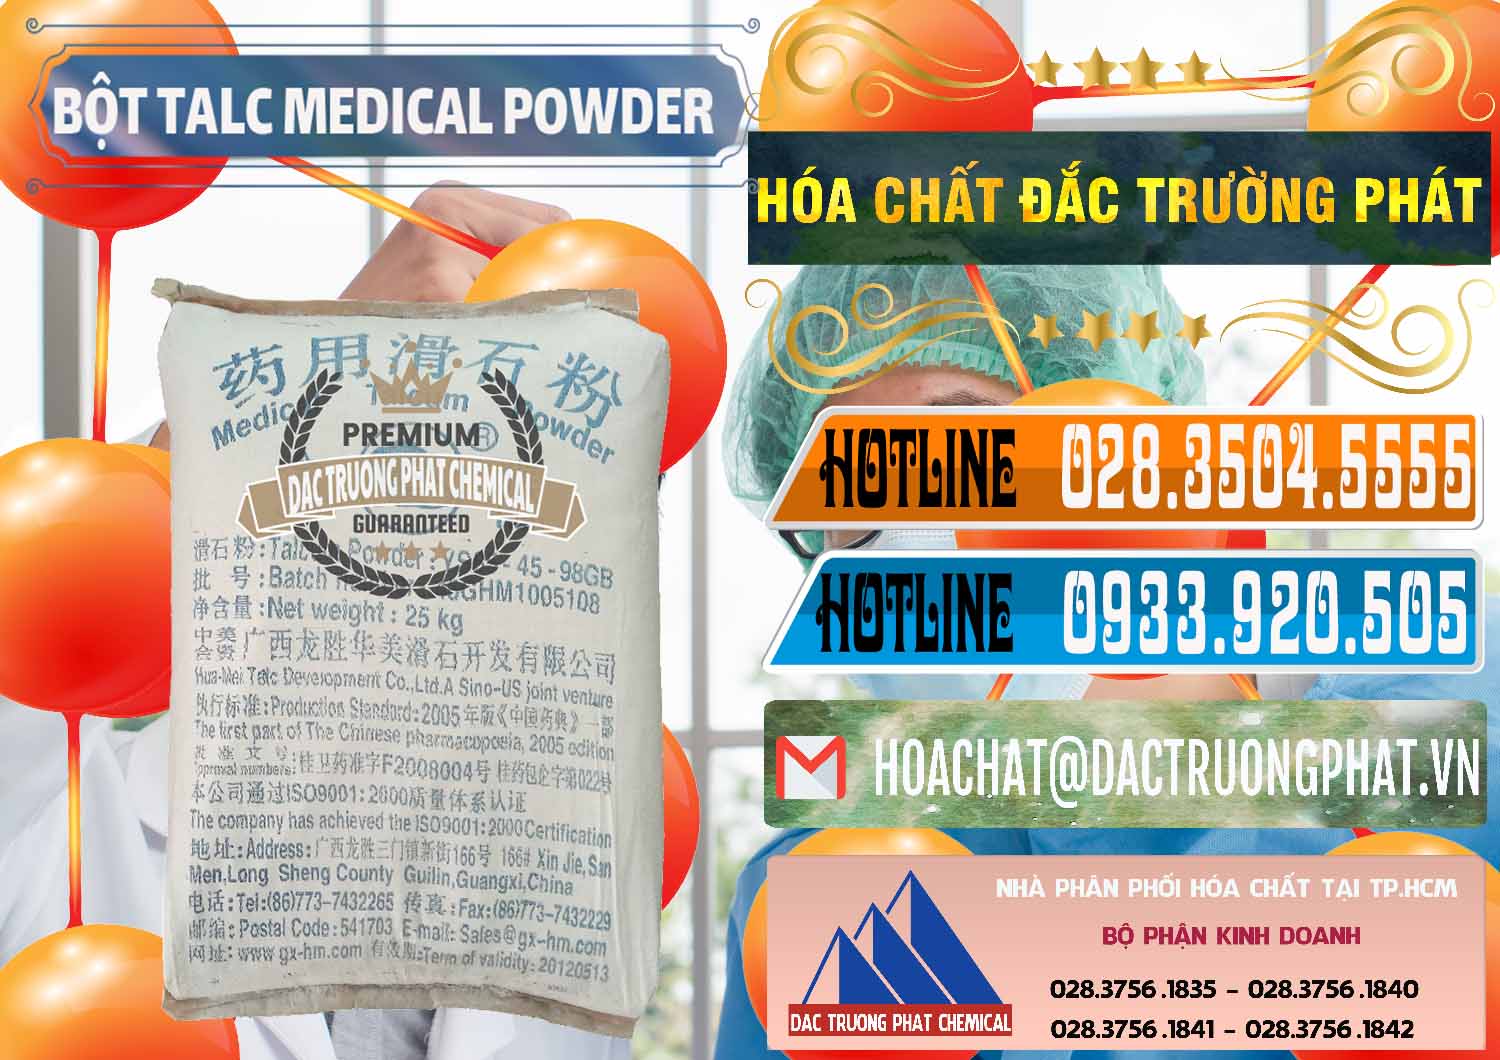 Công ty chuyên kinh doanh - bán Bột Talc Medical Powder Trung Quốc China - 0036 - Chuyên kinh doanh & phân phối hóa chất tại TP.HCM - stmp.net